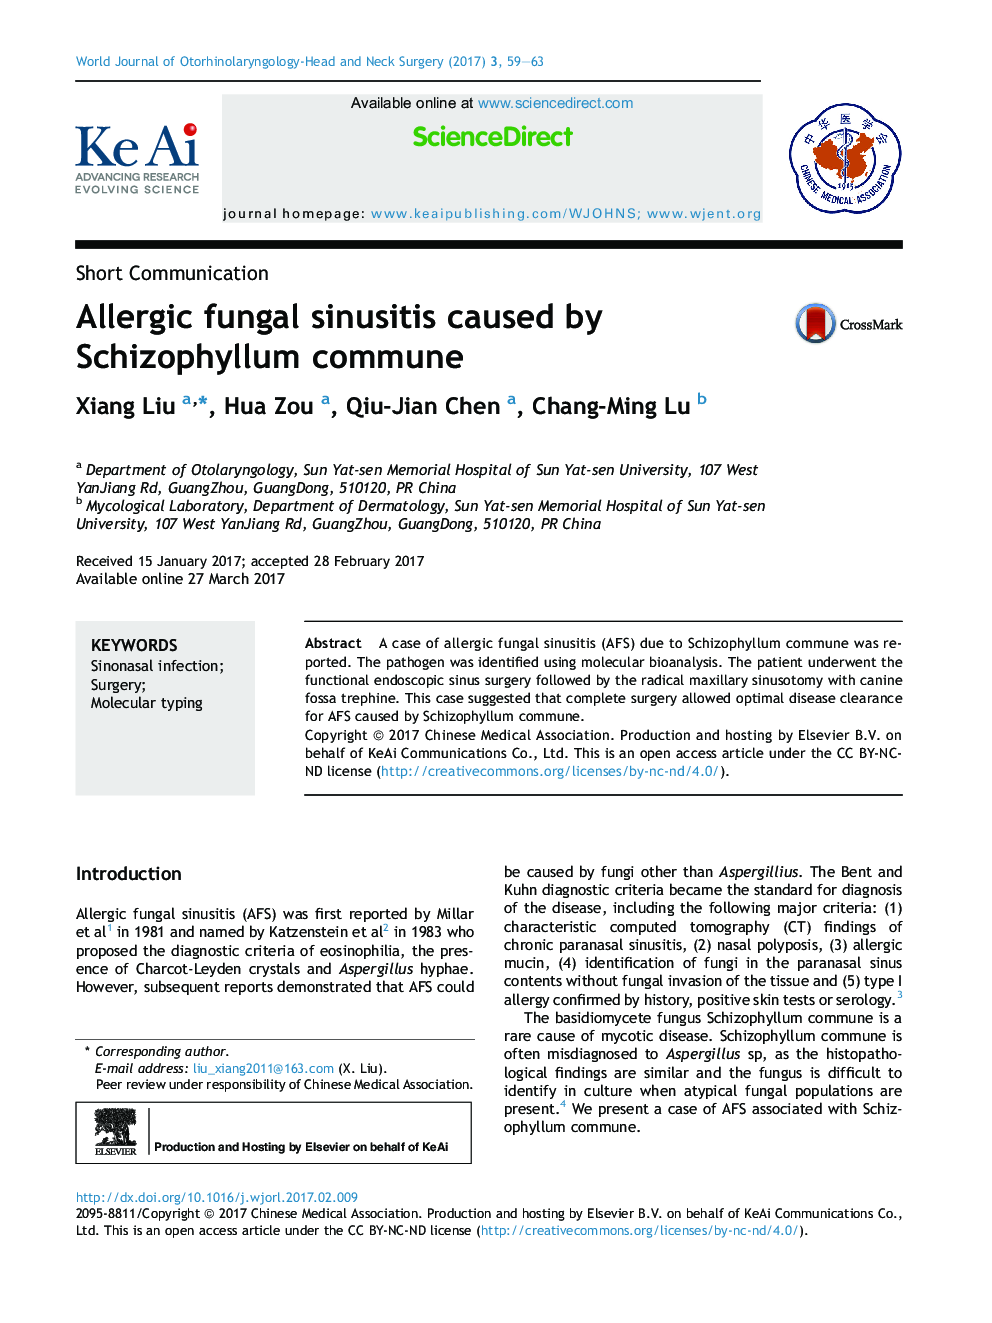 Allergic fungal sinusitis caused by Schizophyllum commune